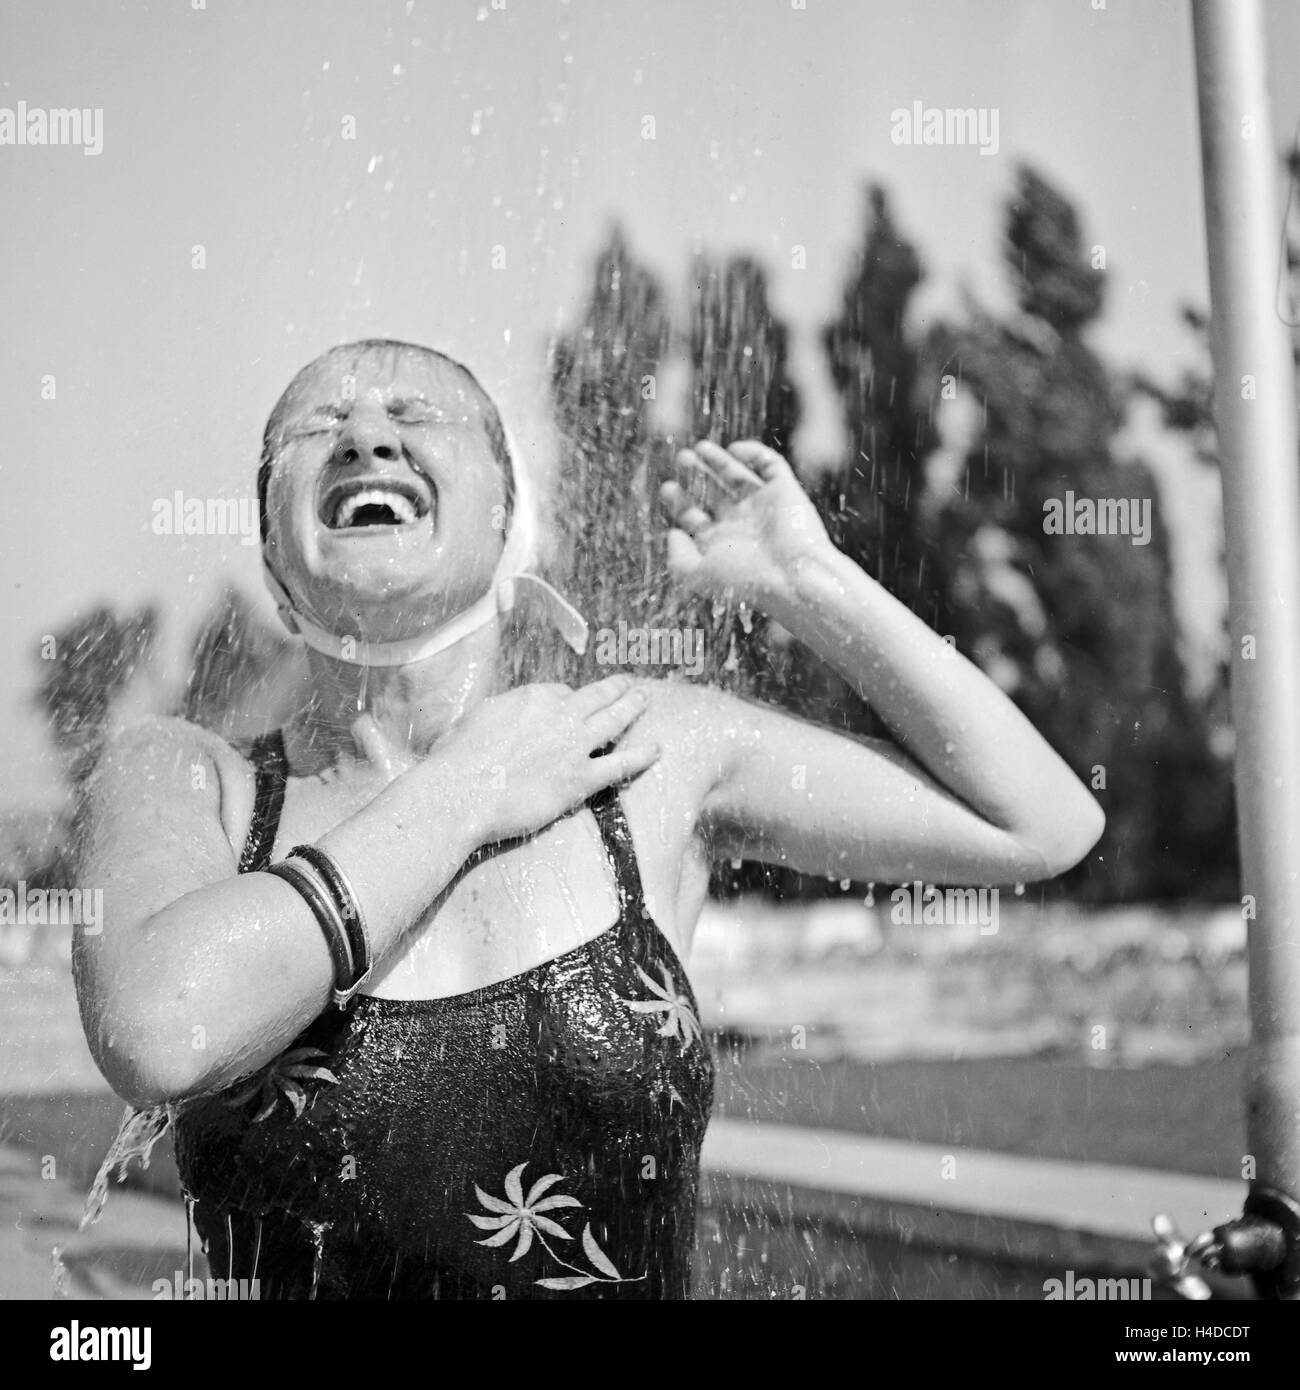 Eine Frau kühlt sich ab an einer Dusche in Bad Rippoldsau Schapbach im Schwarzwald, Deutschland 1930er Jahre. A woman cooling herself in a shower at Bad Rippoldsau Schapbach in Black Forest, Germany 1930s. Stock Photo